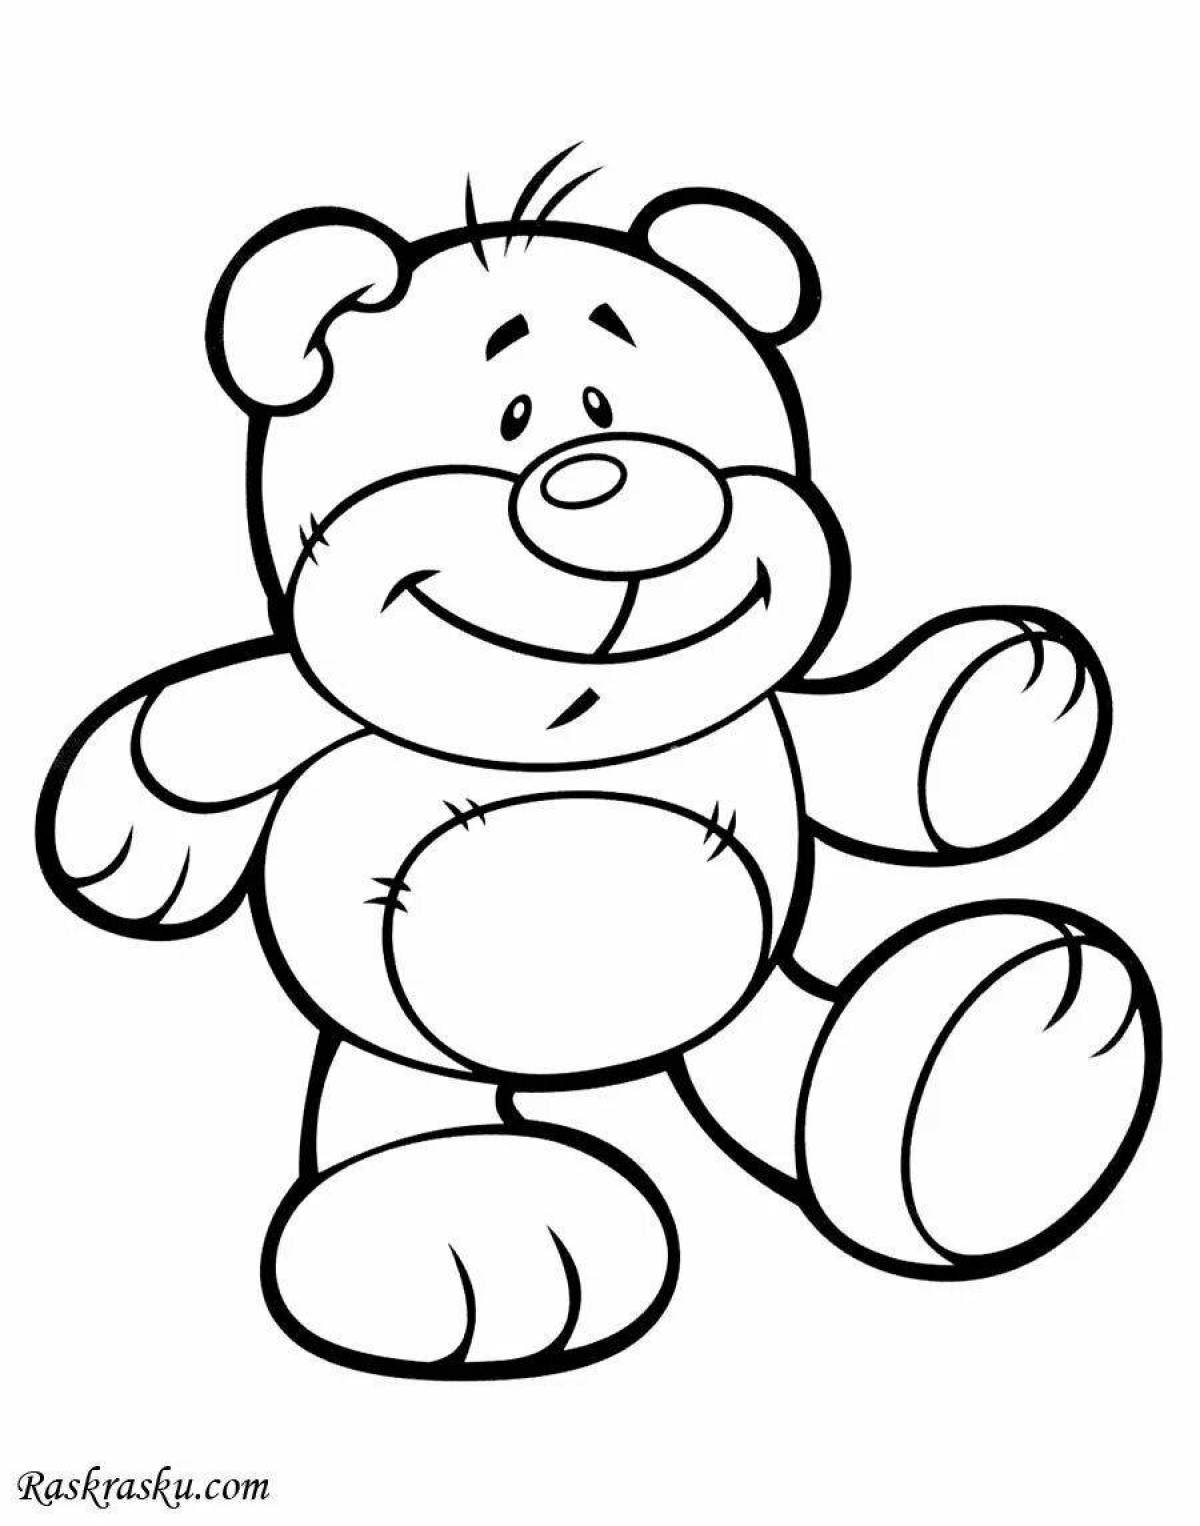 Coloring page happy teddy bear